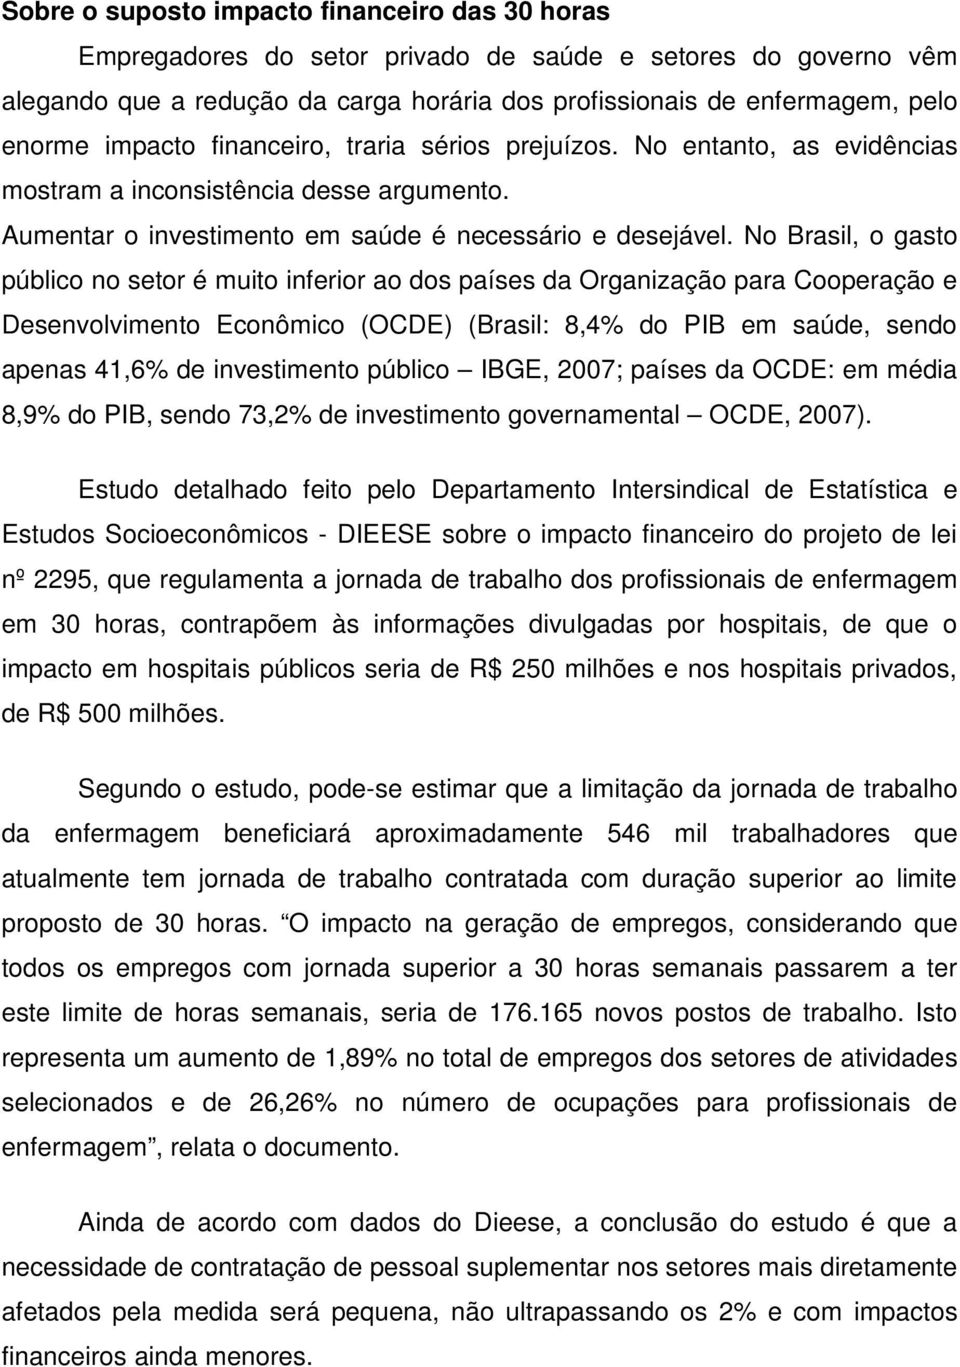 No Brasil, o gasto público no setor é muito inferior ao dos países da Organização para Cooperação e Desenvolvimento Econômico (OCDE) (Brasil: 8,4% do PIB em saúde, sendo apenas 41,6% de investimento